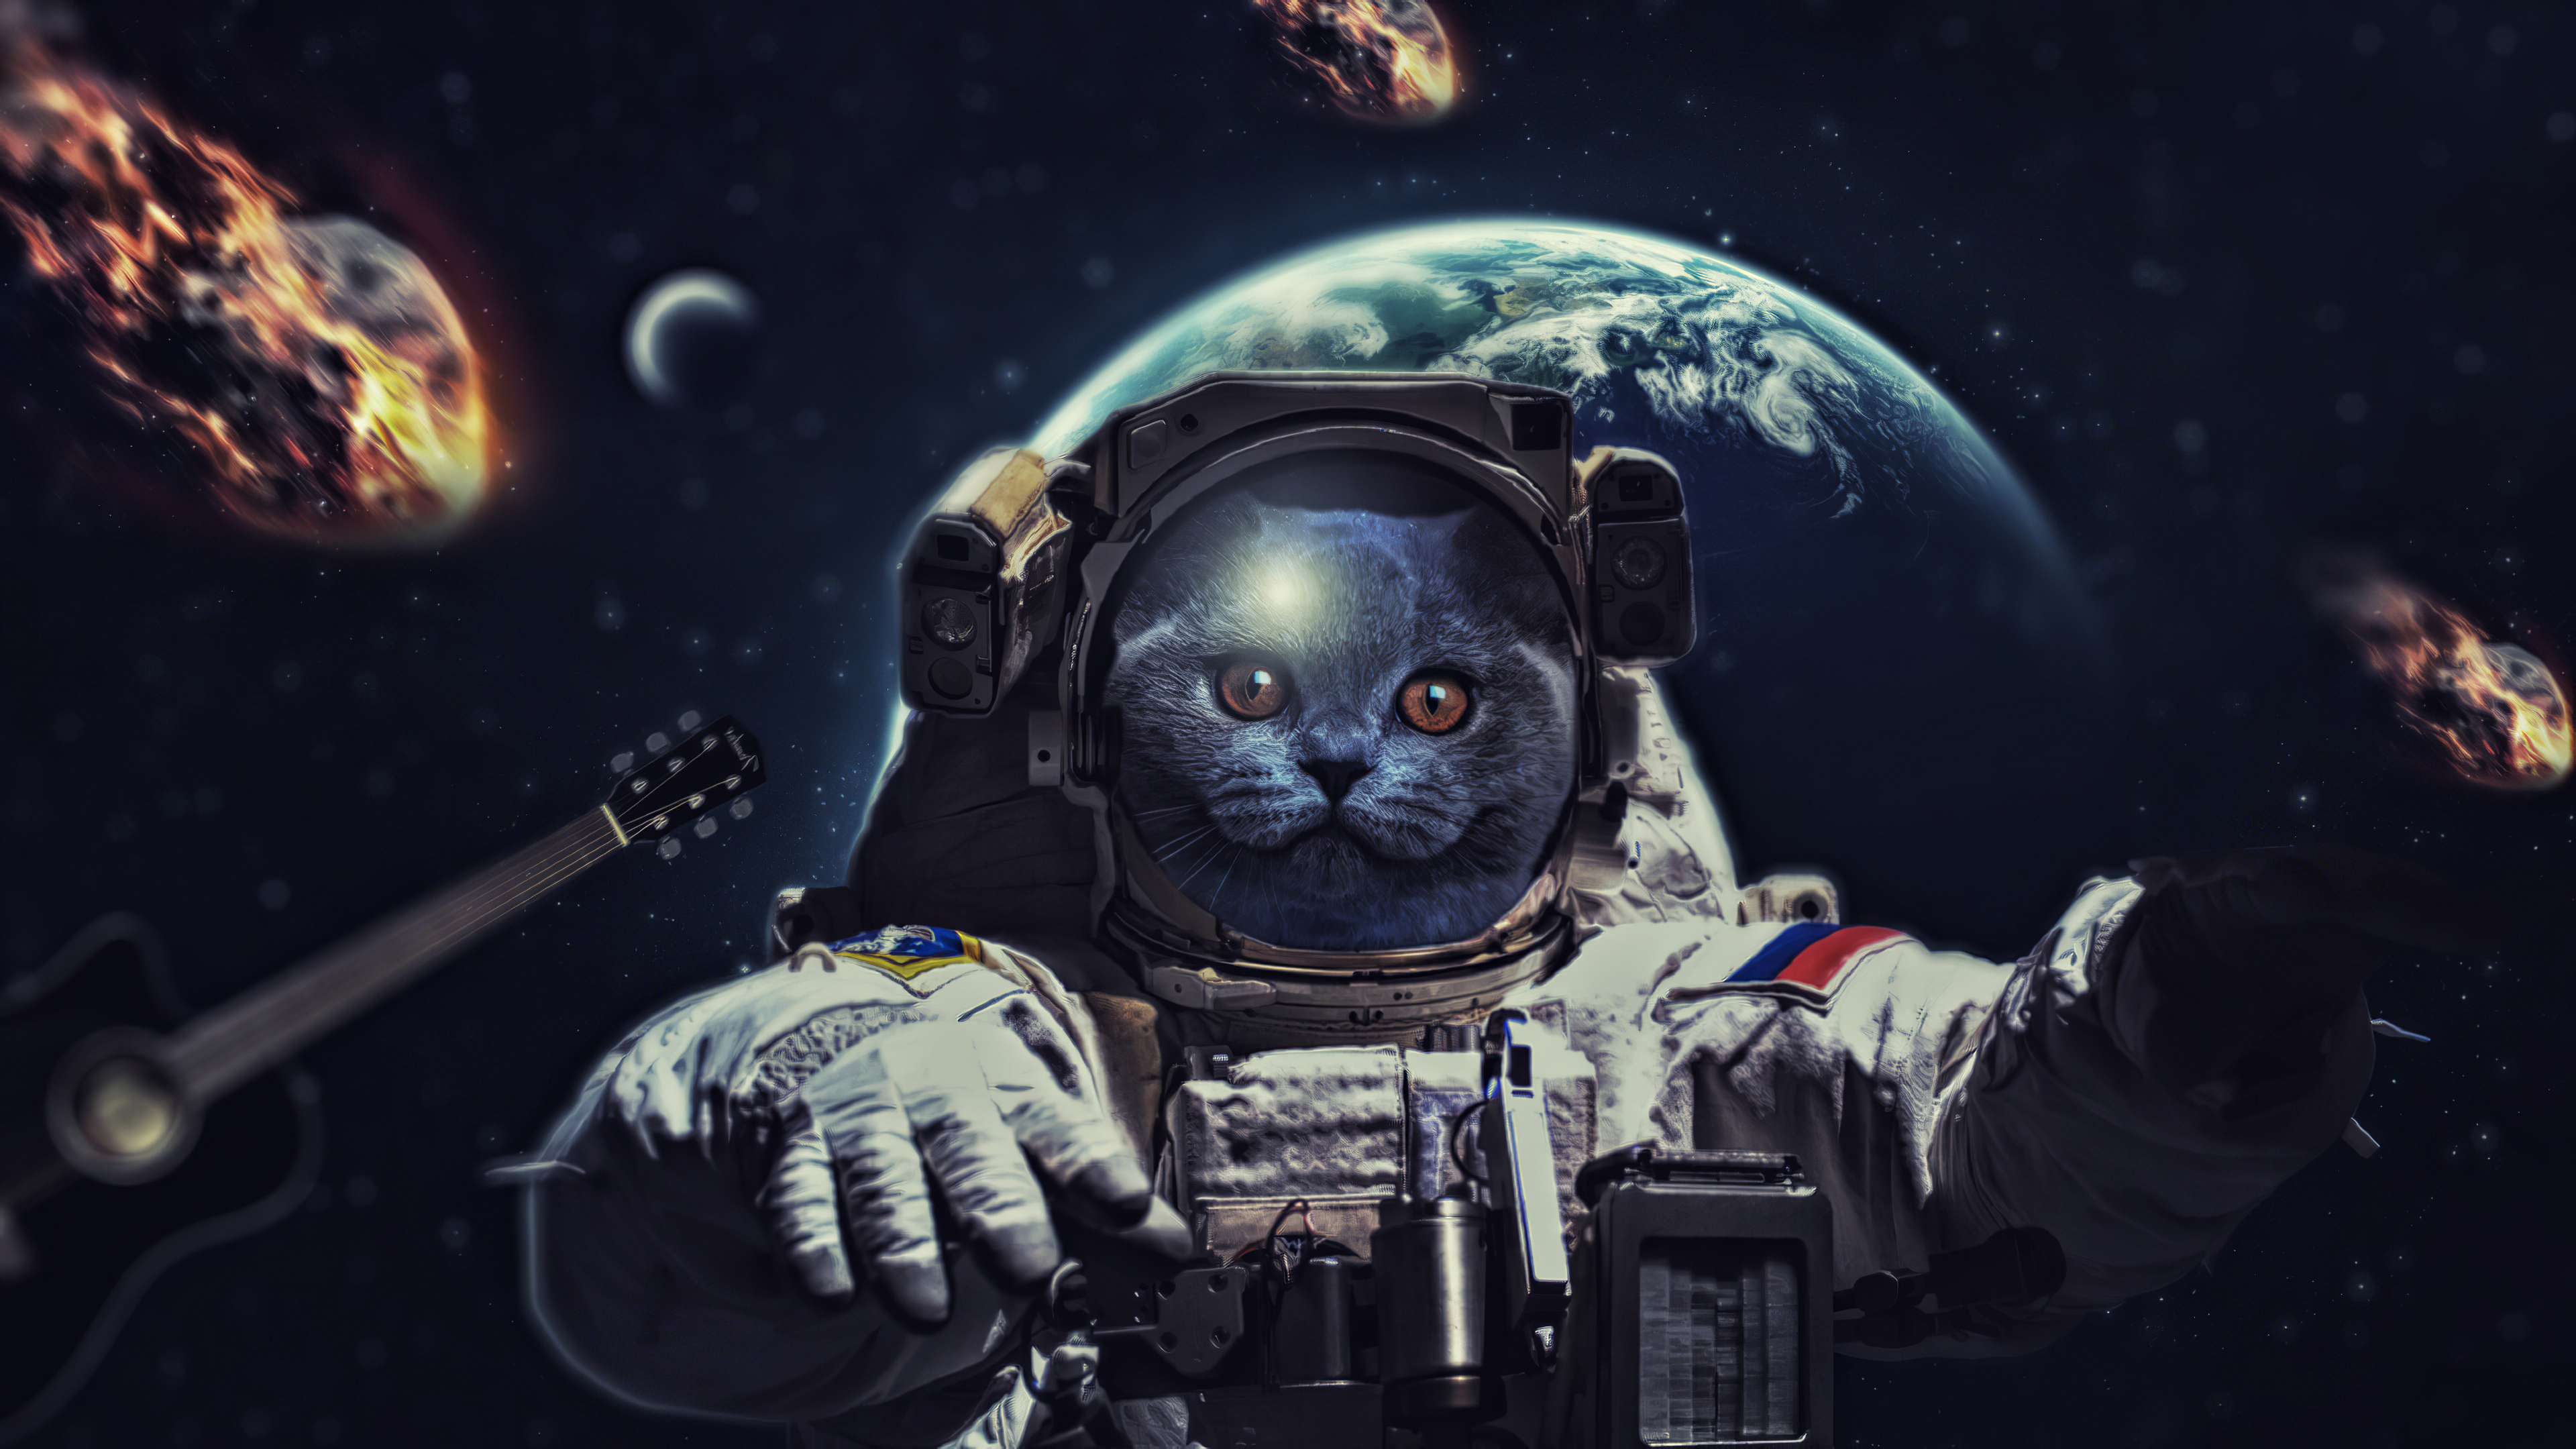 Скачать обои бесплатно Космос, Кот, Астронавт, Научная Фантастика картинка на рабочий стол ПК